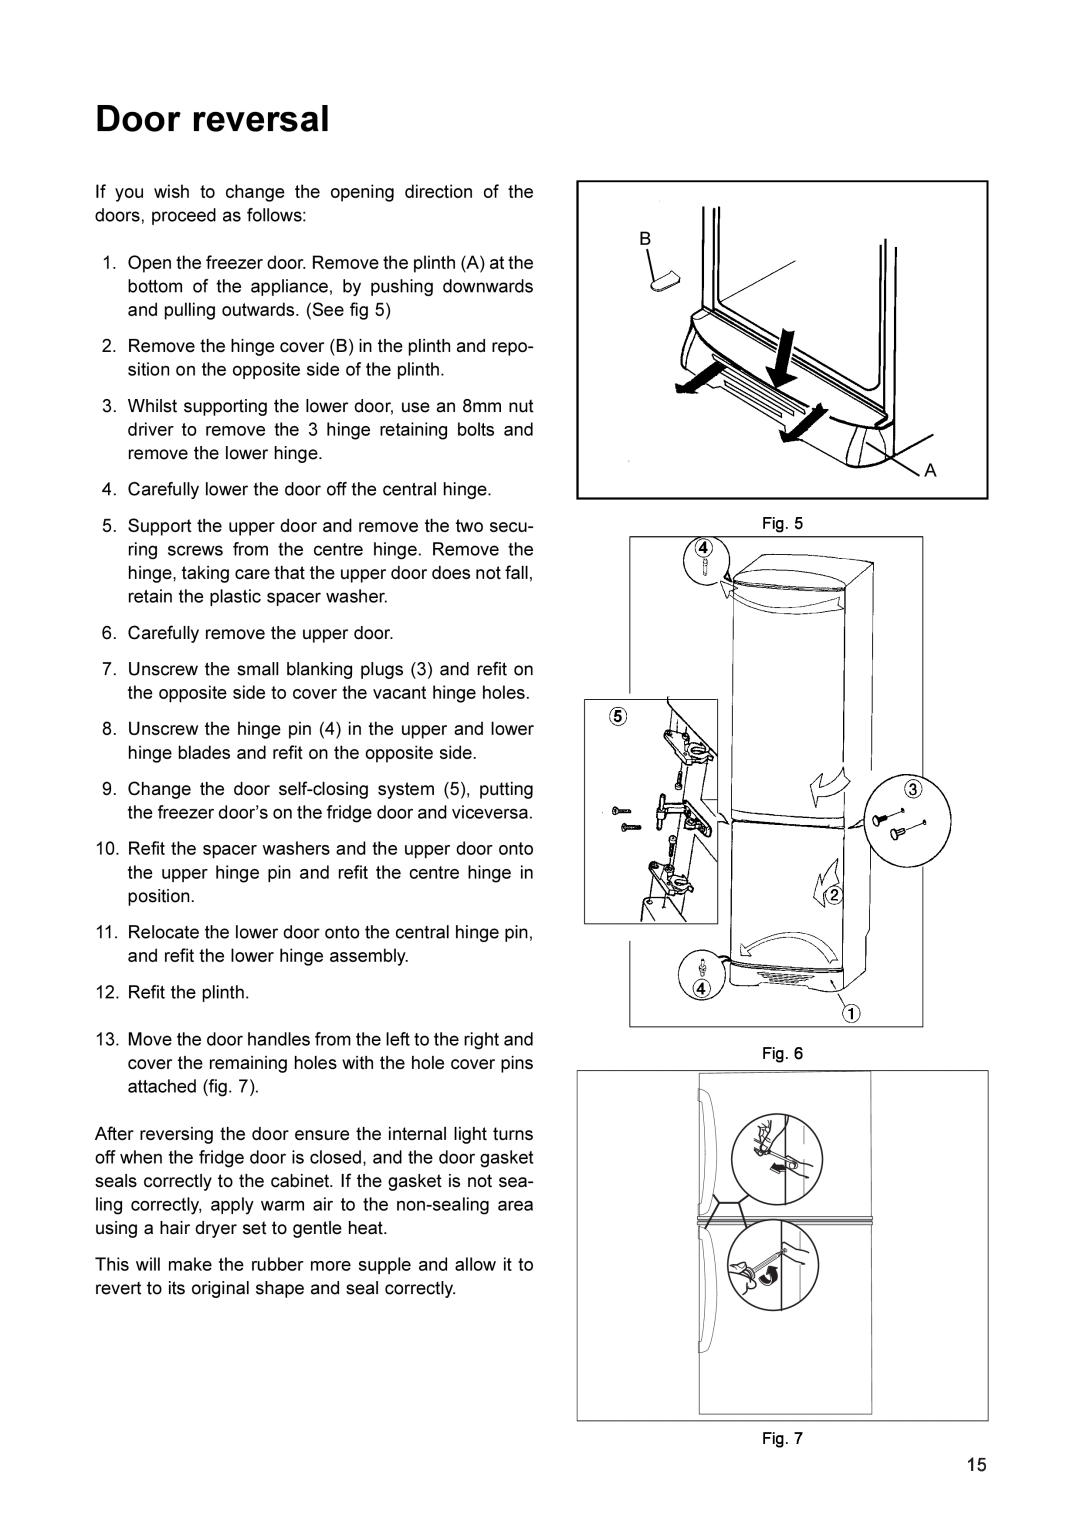 John Lewis JLFFW2001 manual Door reversal 